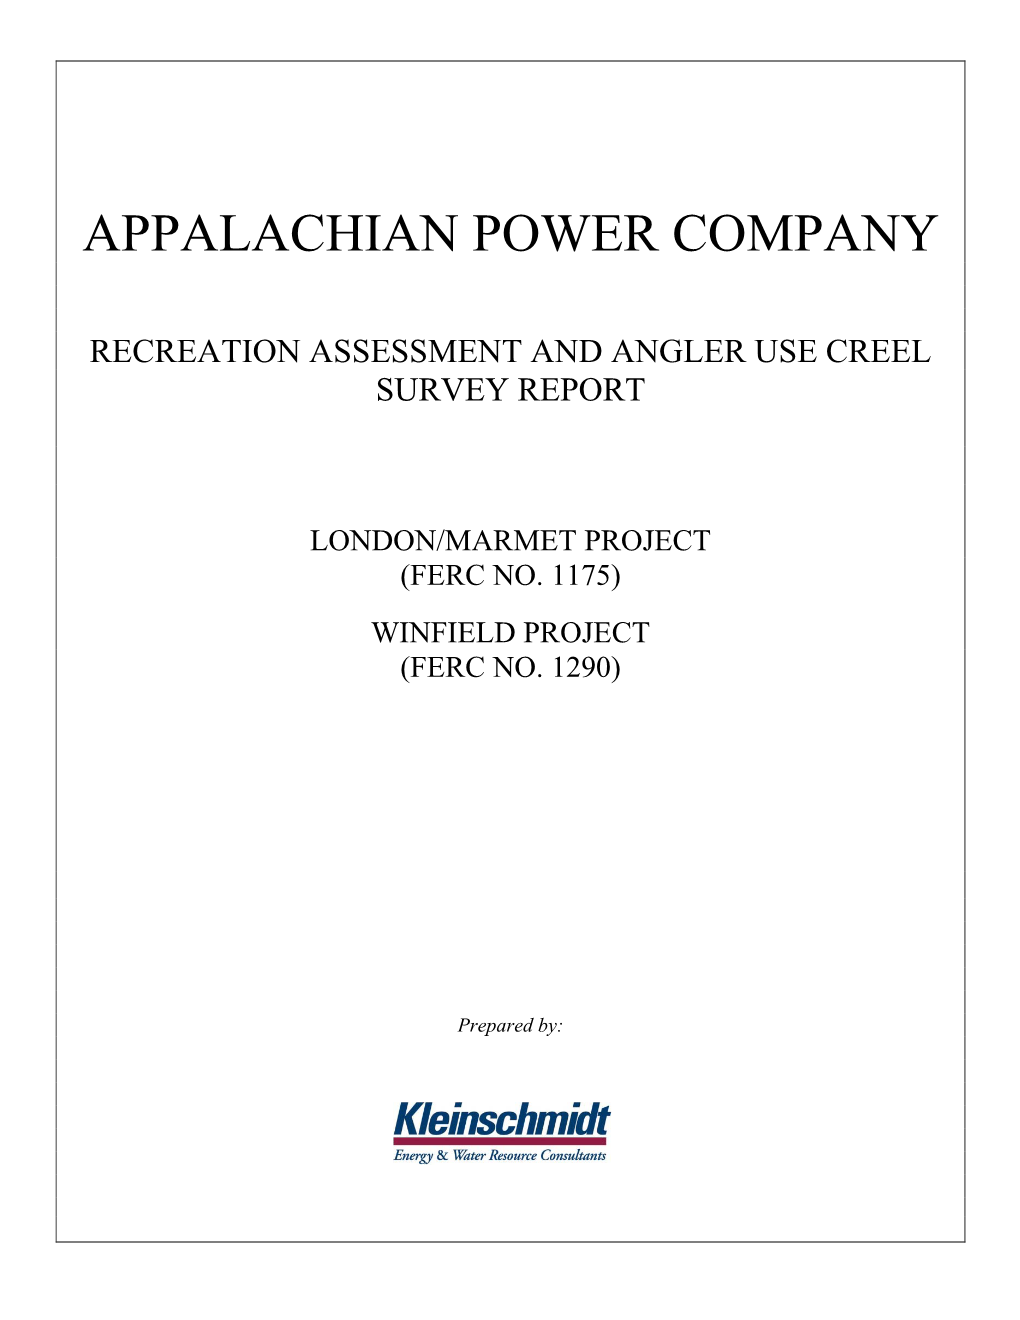 Appalachian Power Company